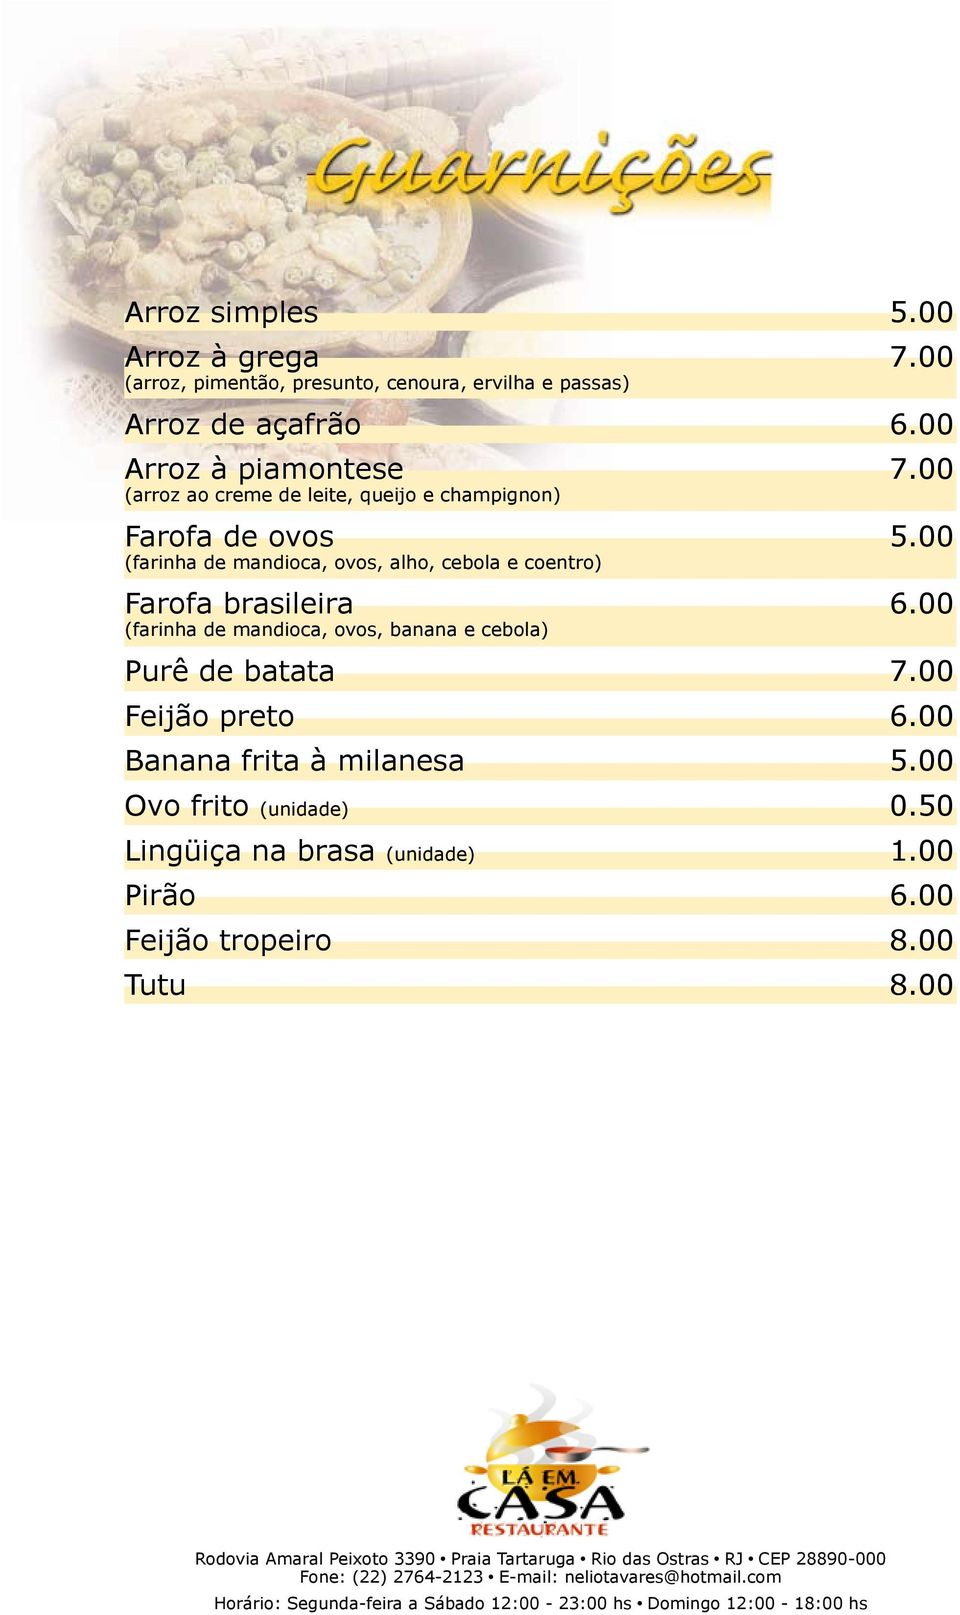 00 (farinha de mandioca, ovos, alho, cebola e coentro) Farofa brasileira 6.